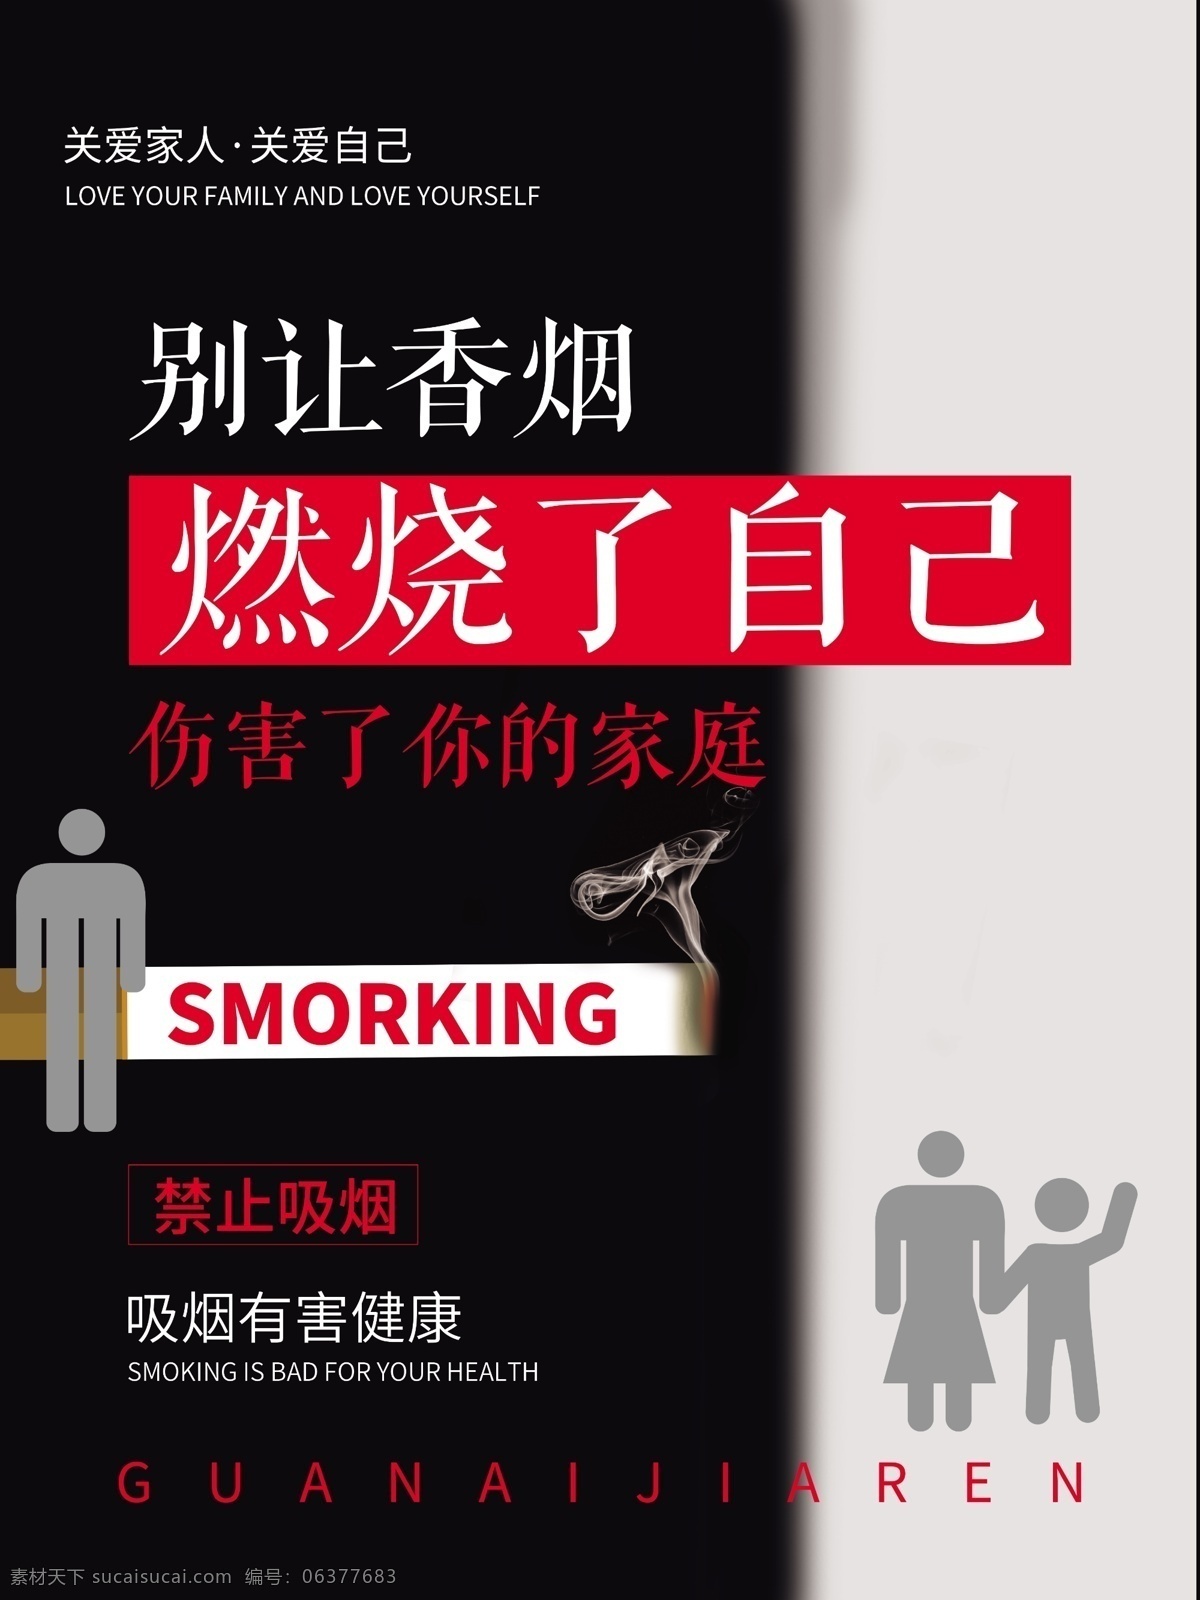 黑白 创意 公益 海报 禁止 吸烟 关爱 家庭